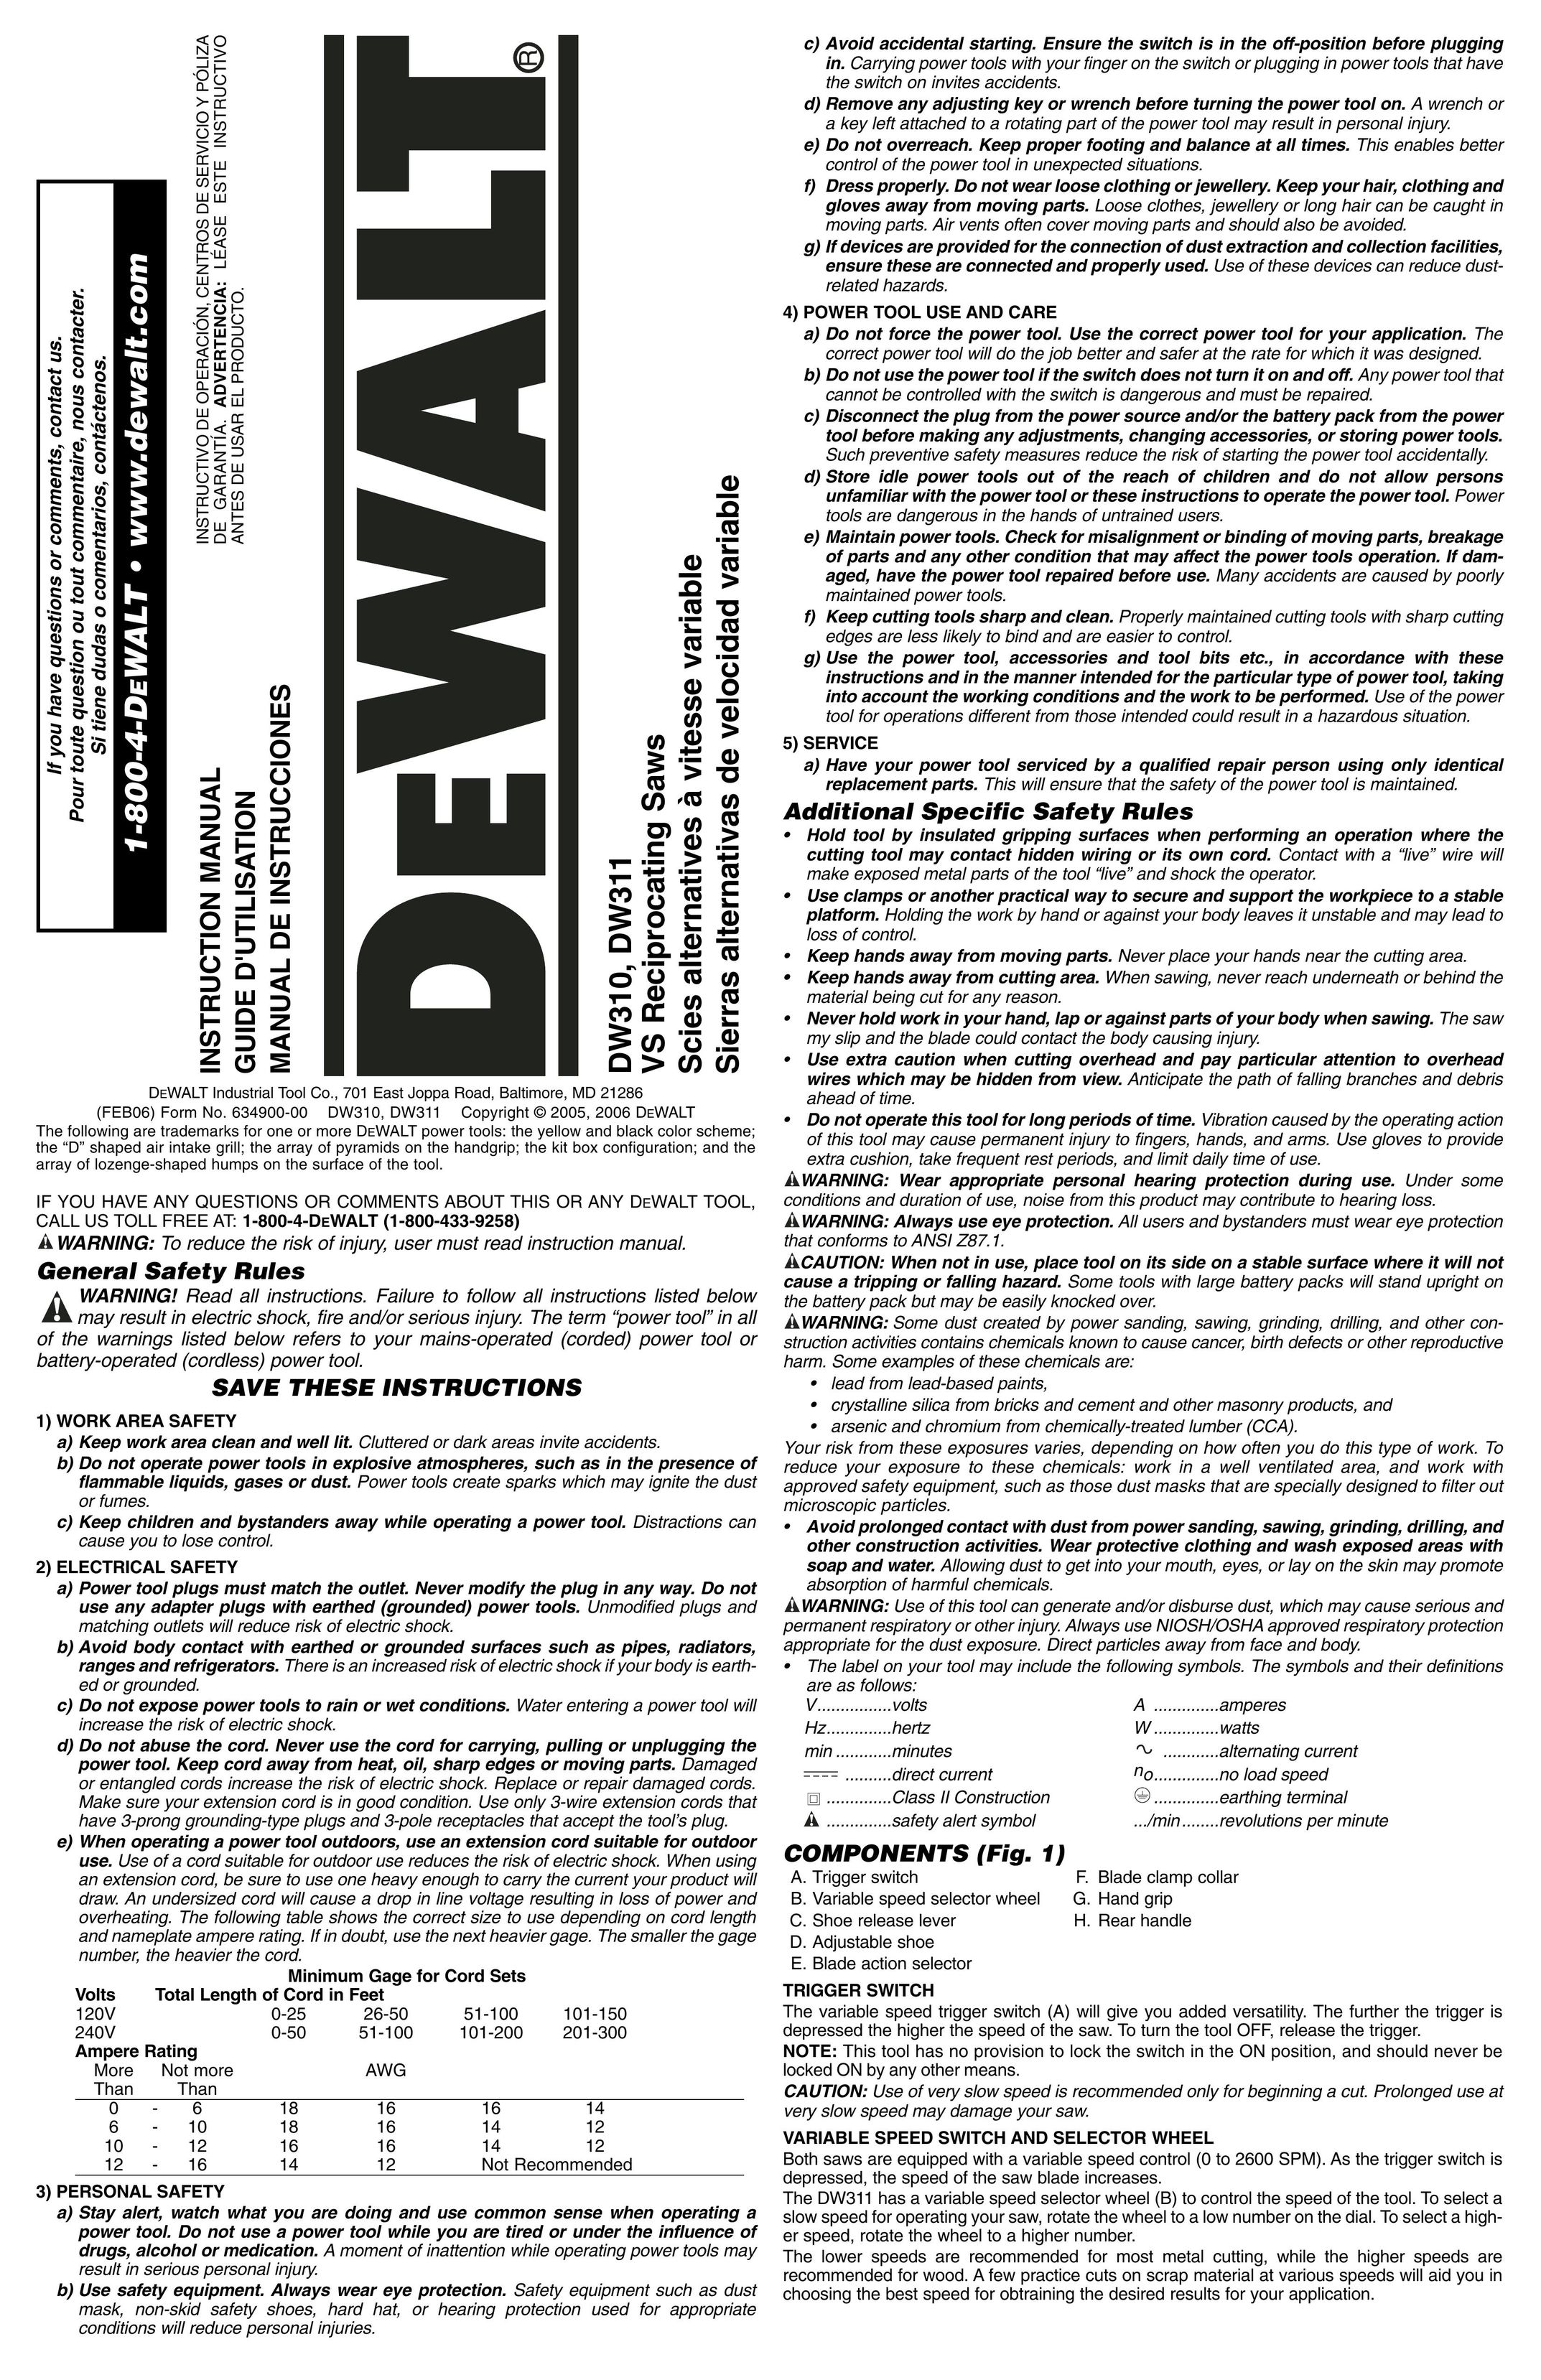 DeWalt DW310 Saw User Manual